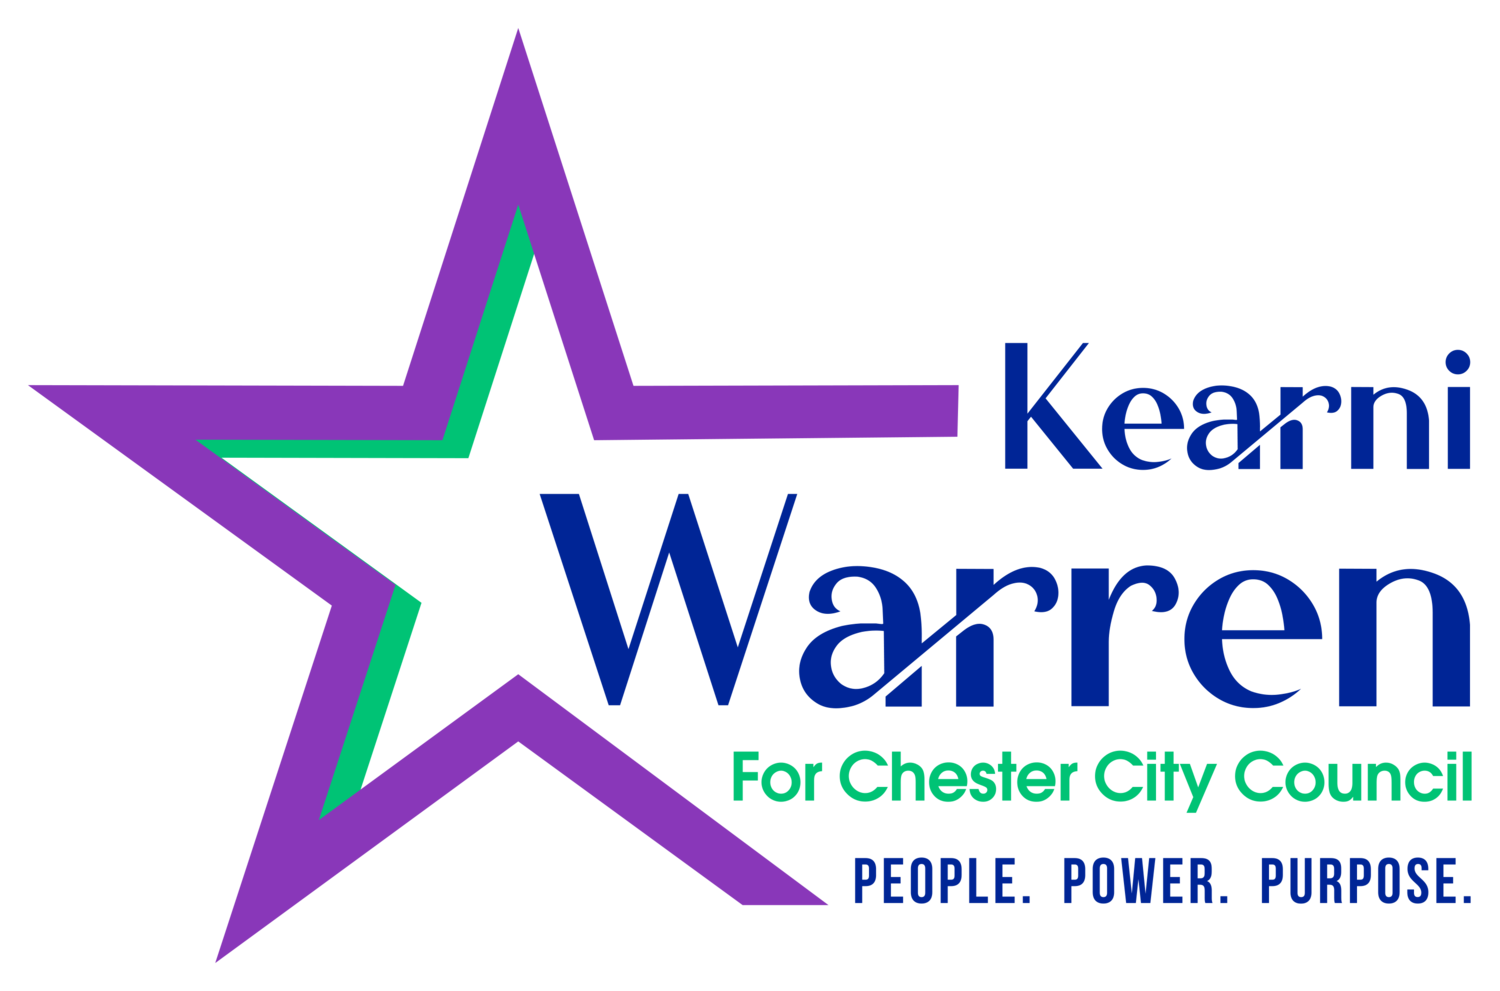 Kearni Warren for Chester